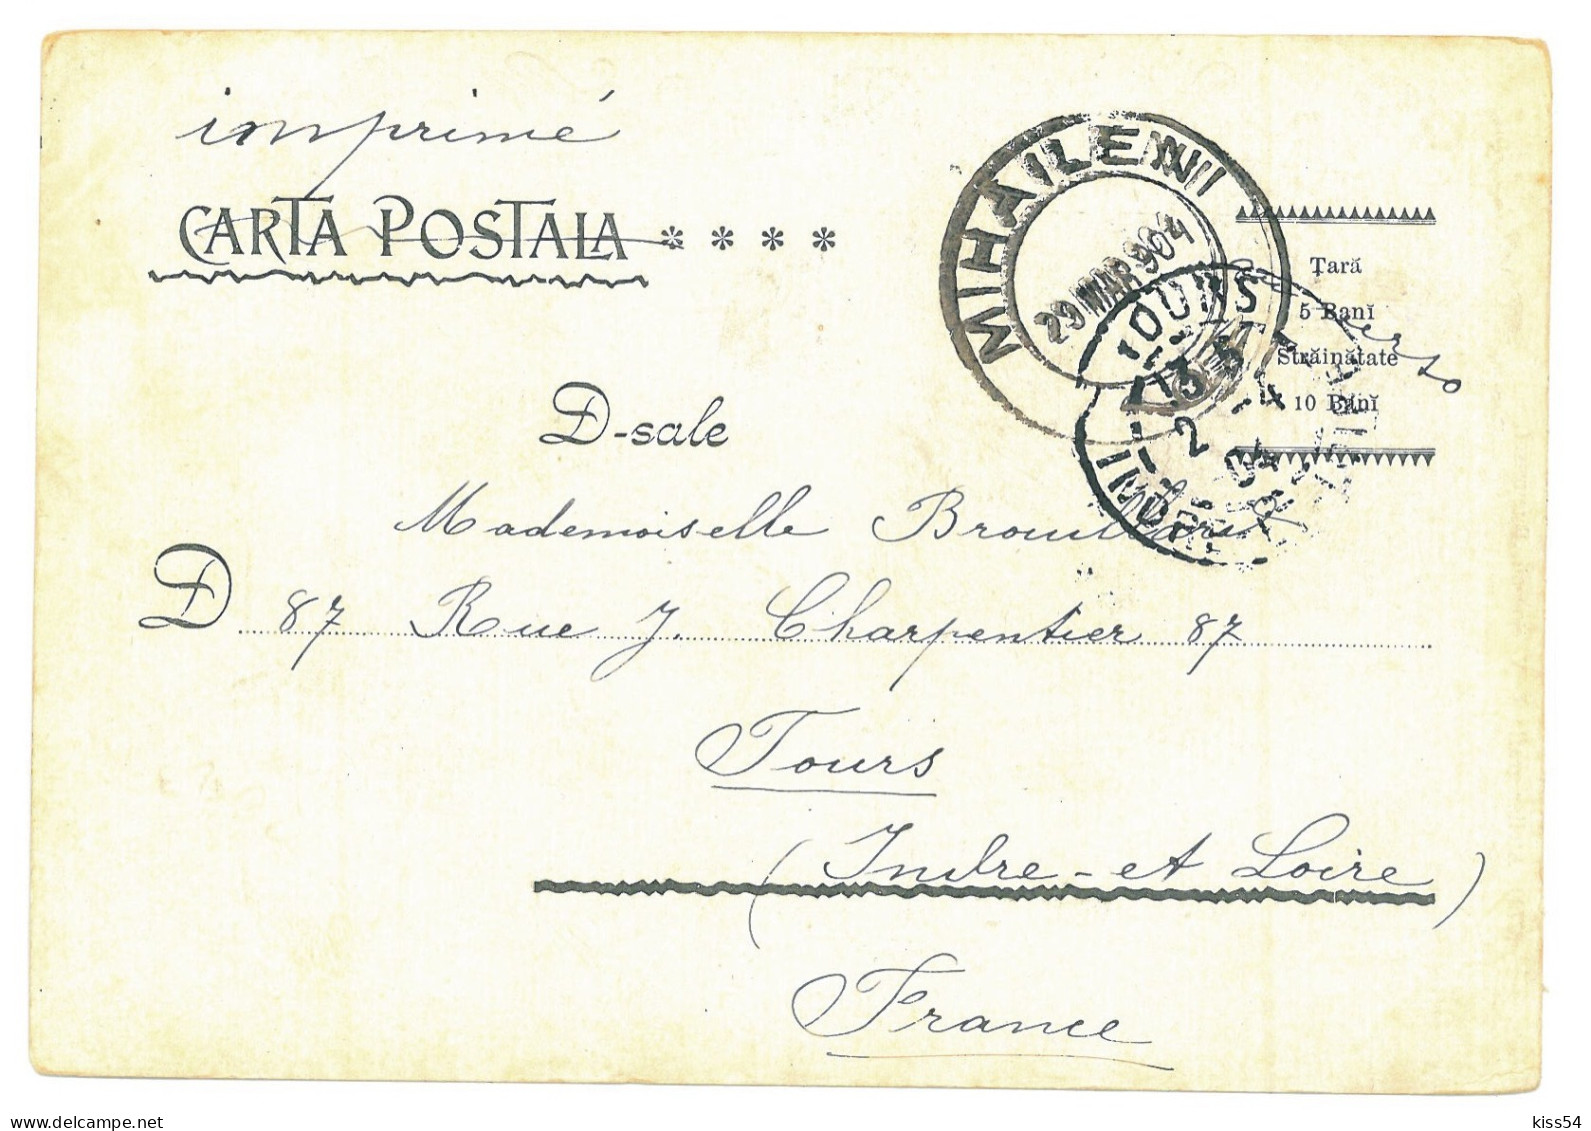 RO 60 - 20637 BUCURESTI, Metropolitan Church, Romania - Old Postcard - Used - 1904 - Romania